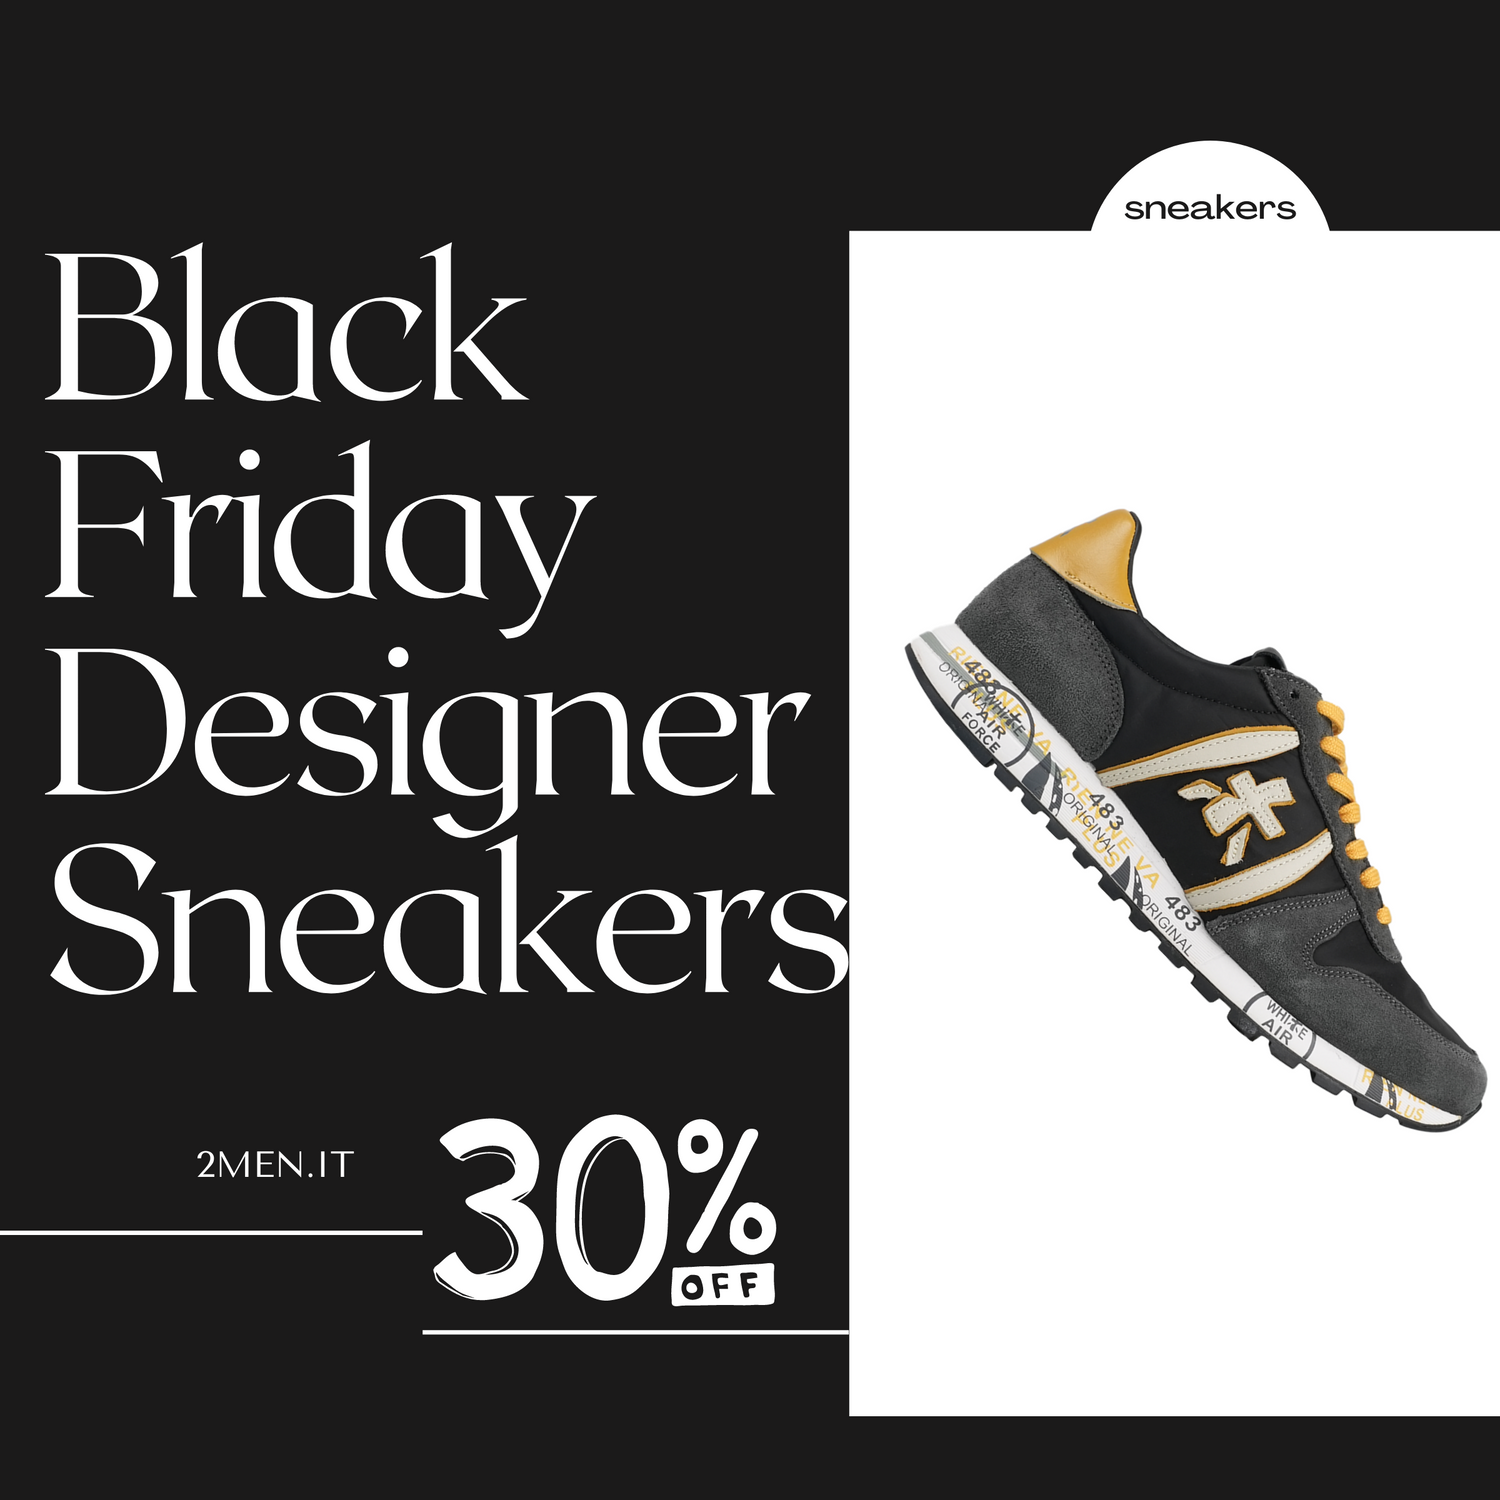 Best Black Friday Italian Designer Sneakers Deals FOR MEN - 30% OFF SALE